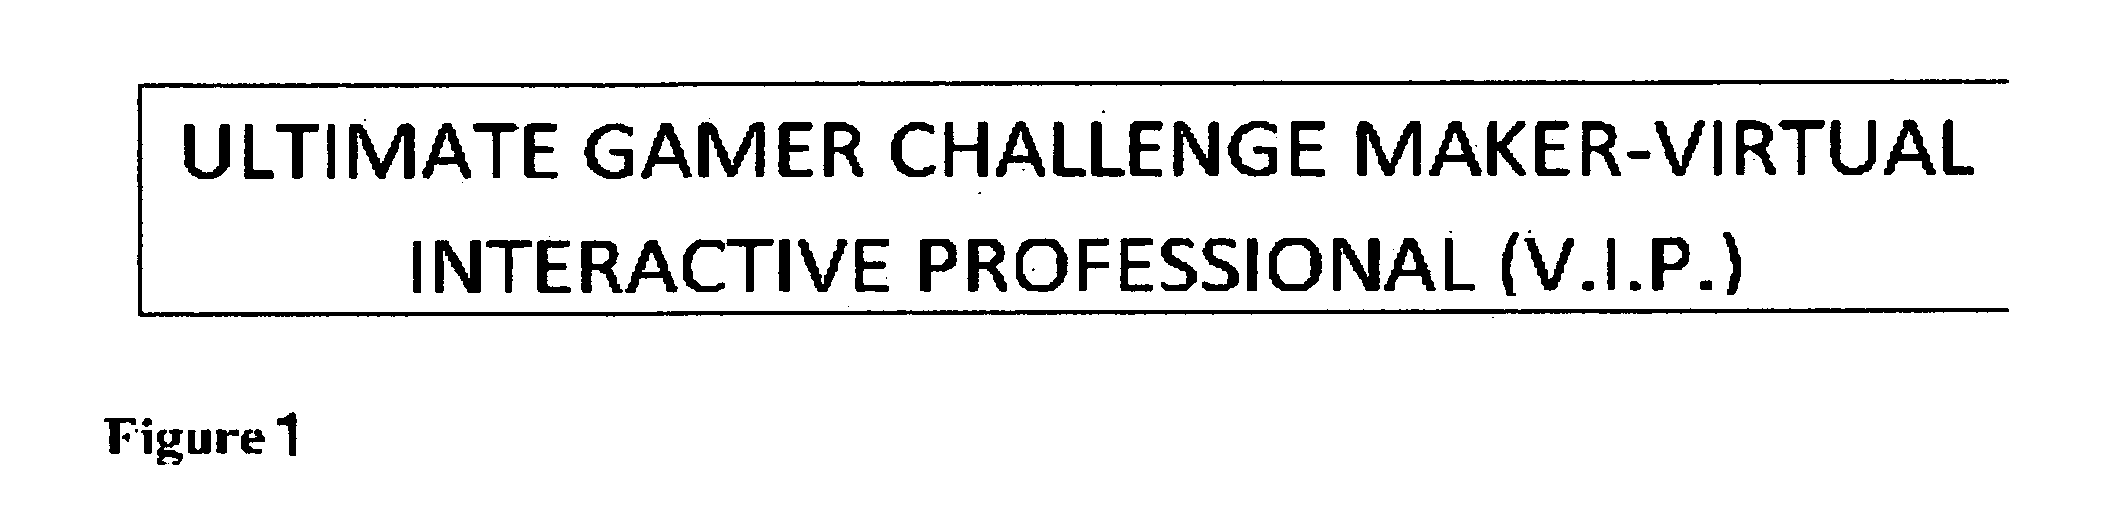 Ultimate gamer challenge maker